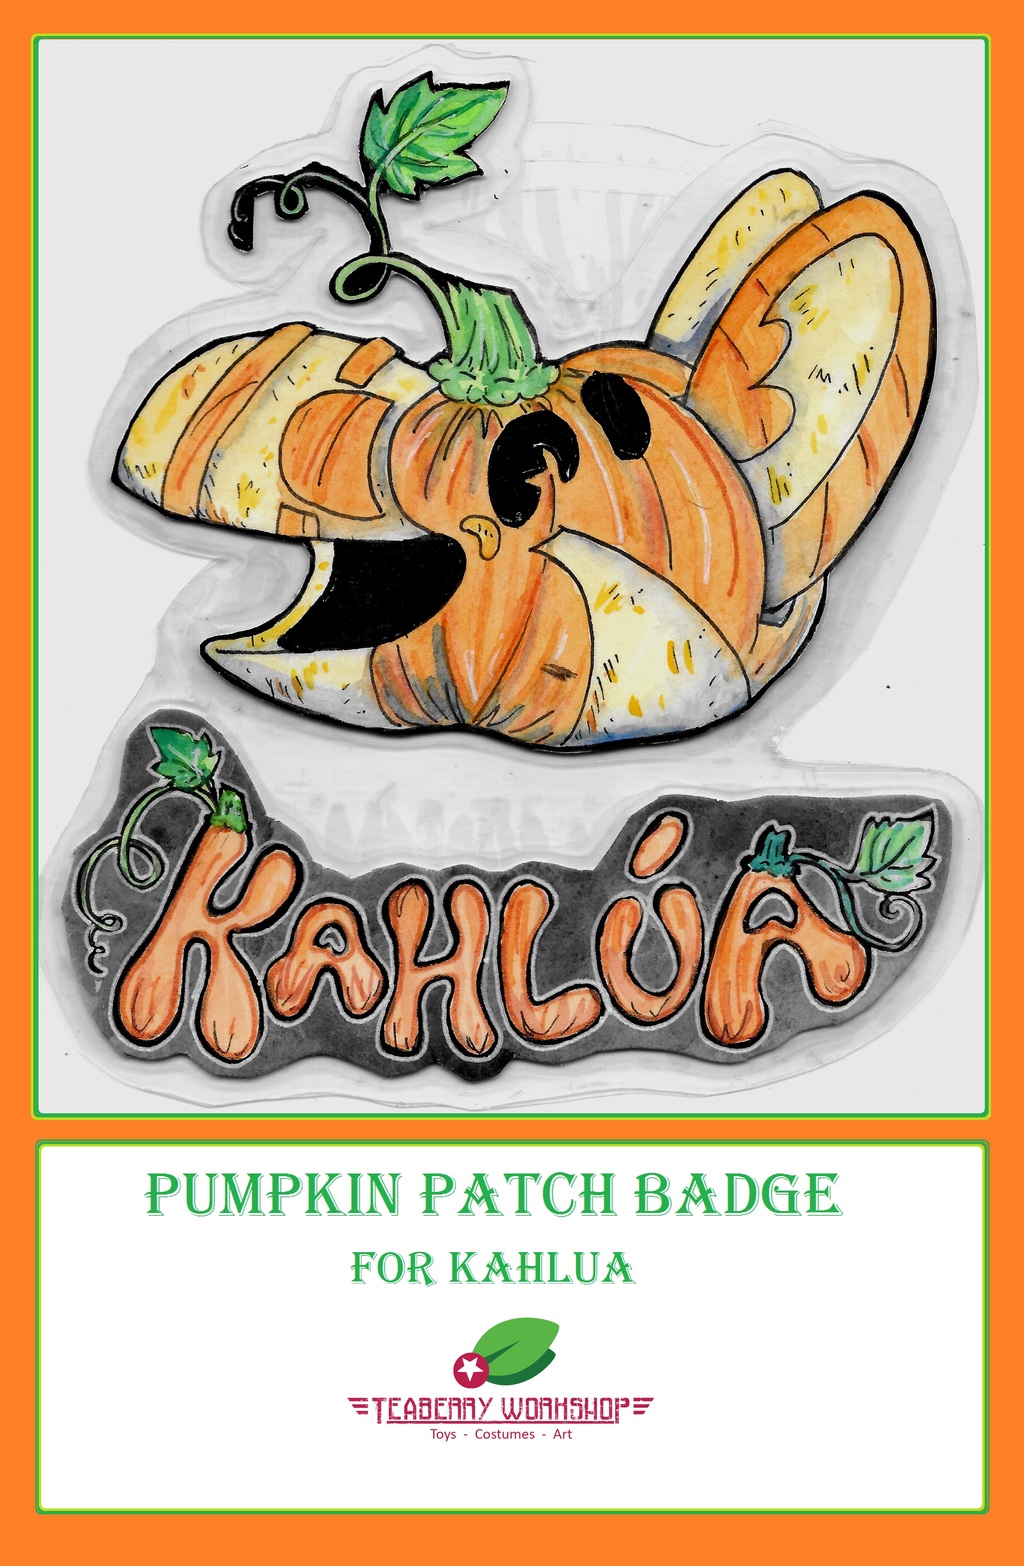 Pumpkin Patch Badge: Kahlua